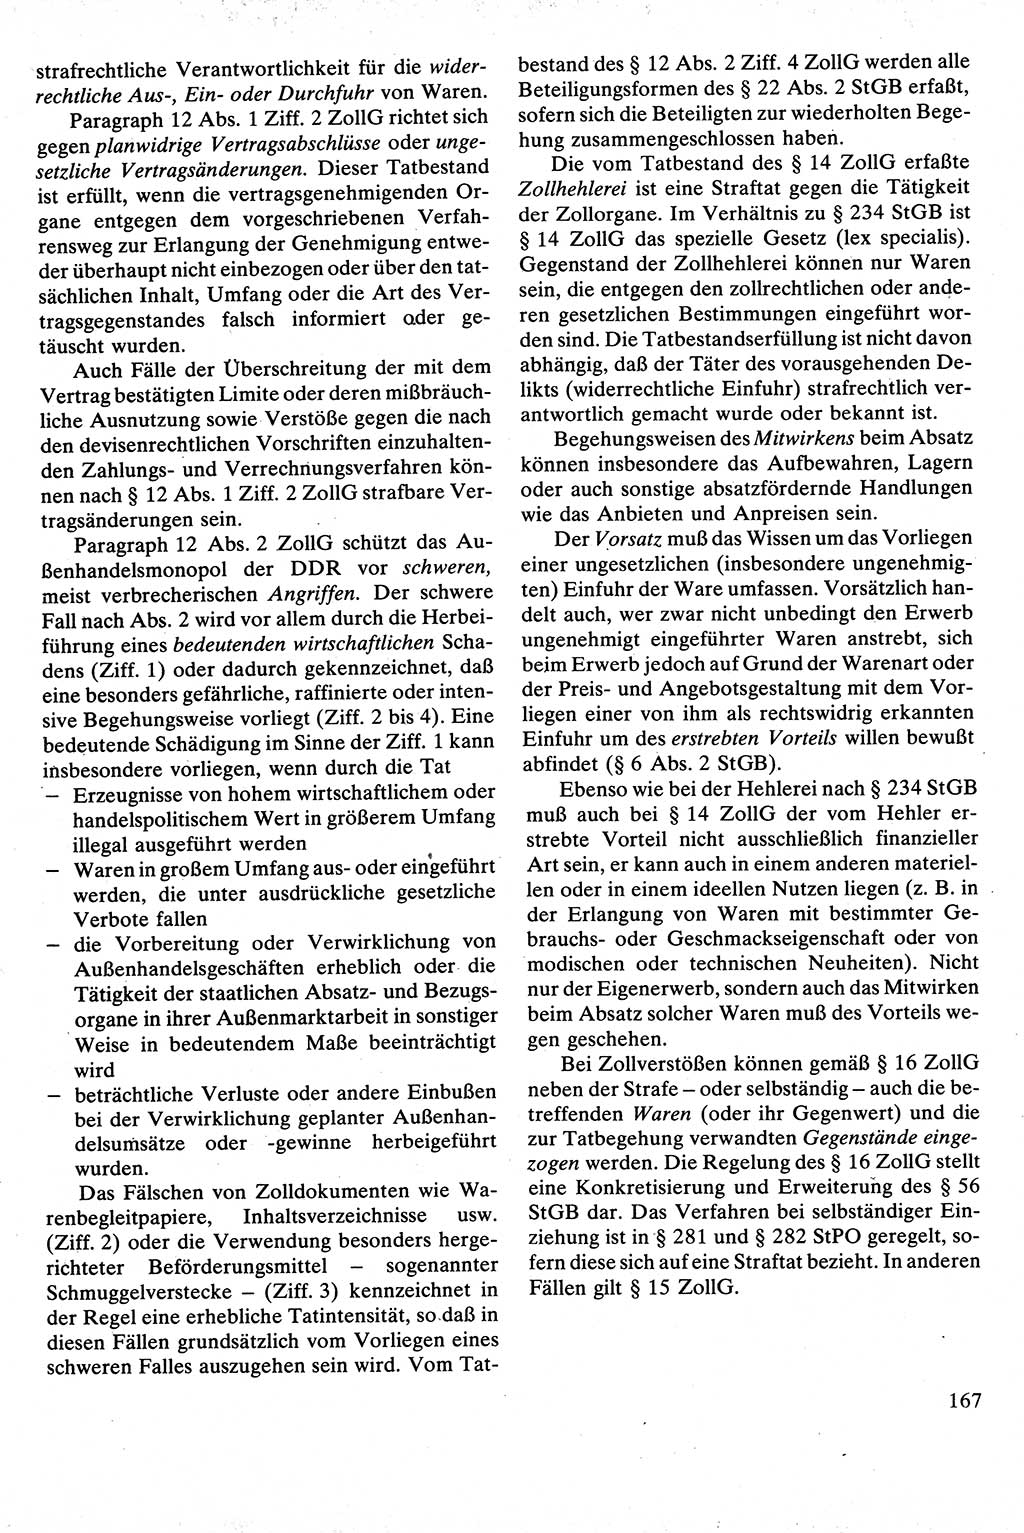 Strafrecht [Deutsche Demokratische Republik (DDR)], Besonderer Teil, Lehrbuch 1981, Seite 167 (Strafr. DDR BT Lb. 1981, S. 167)